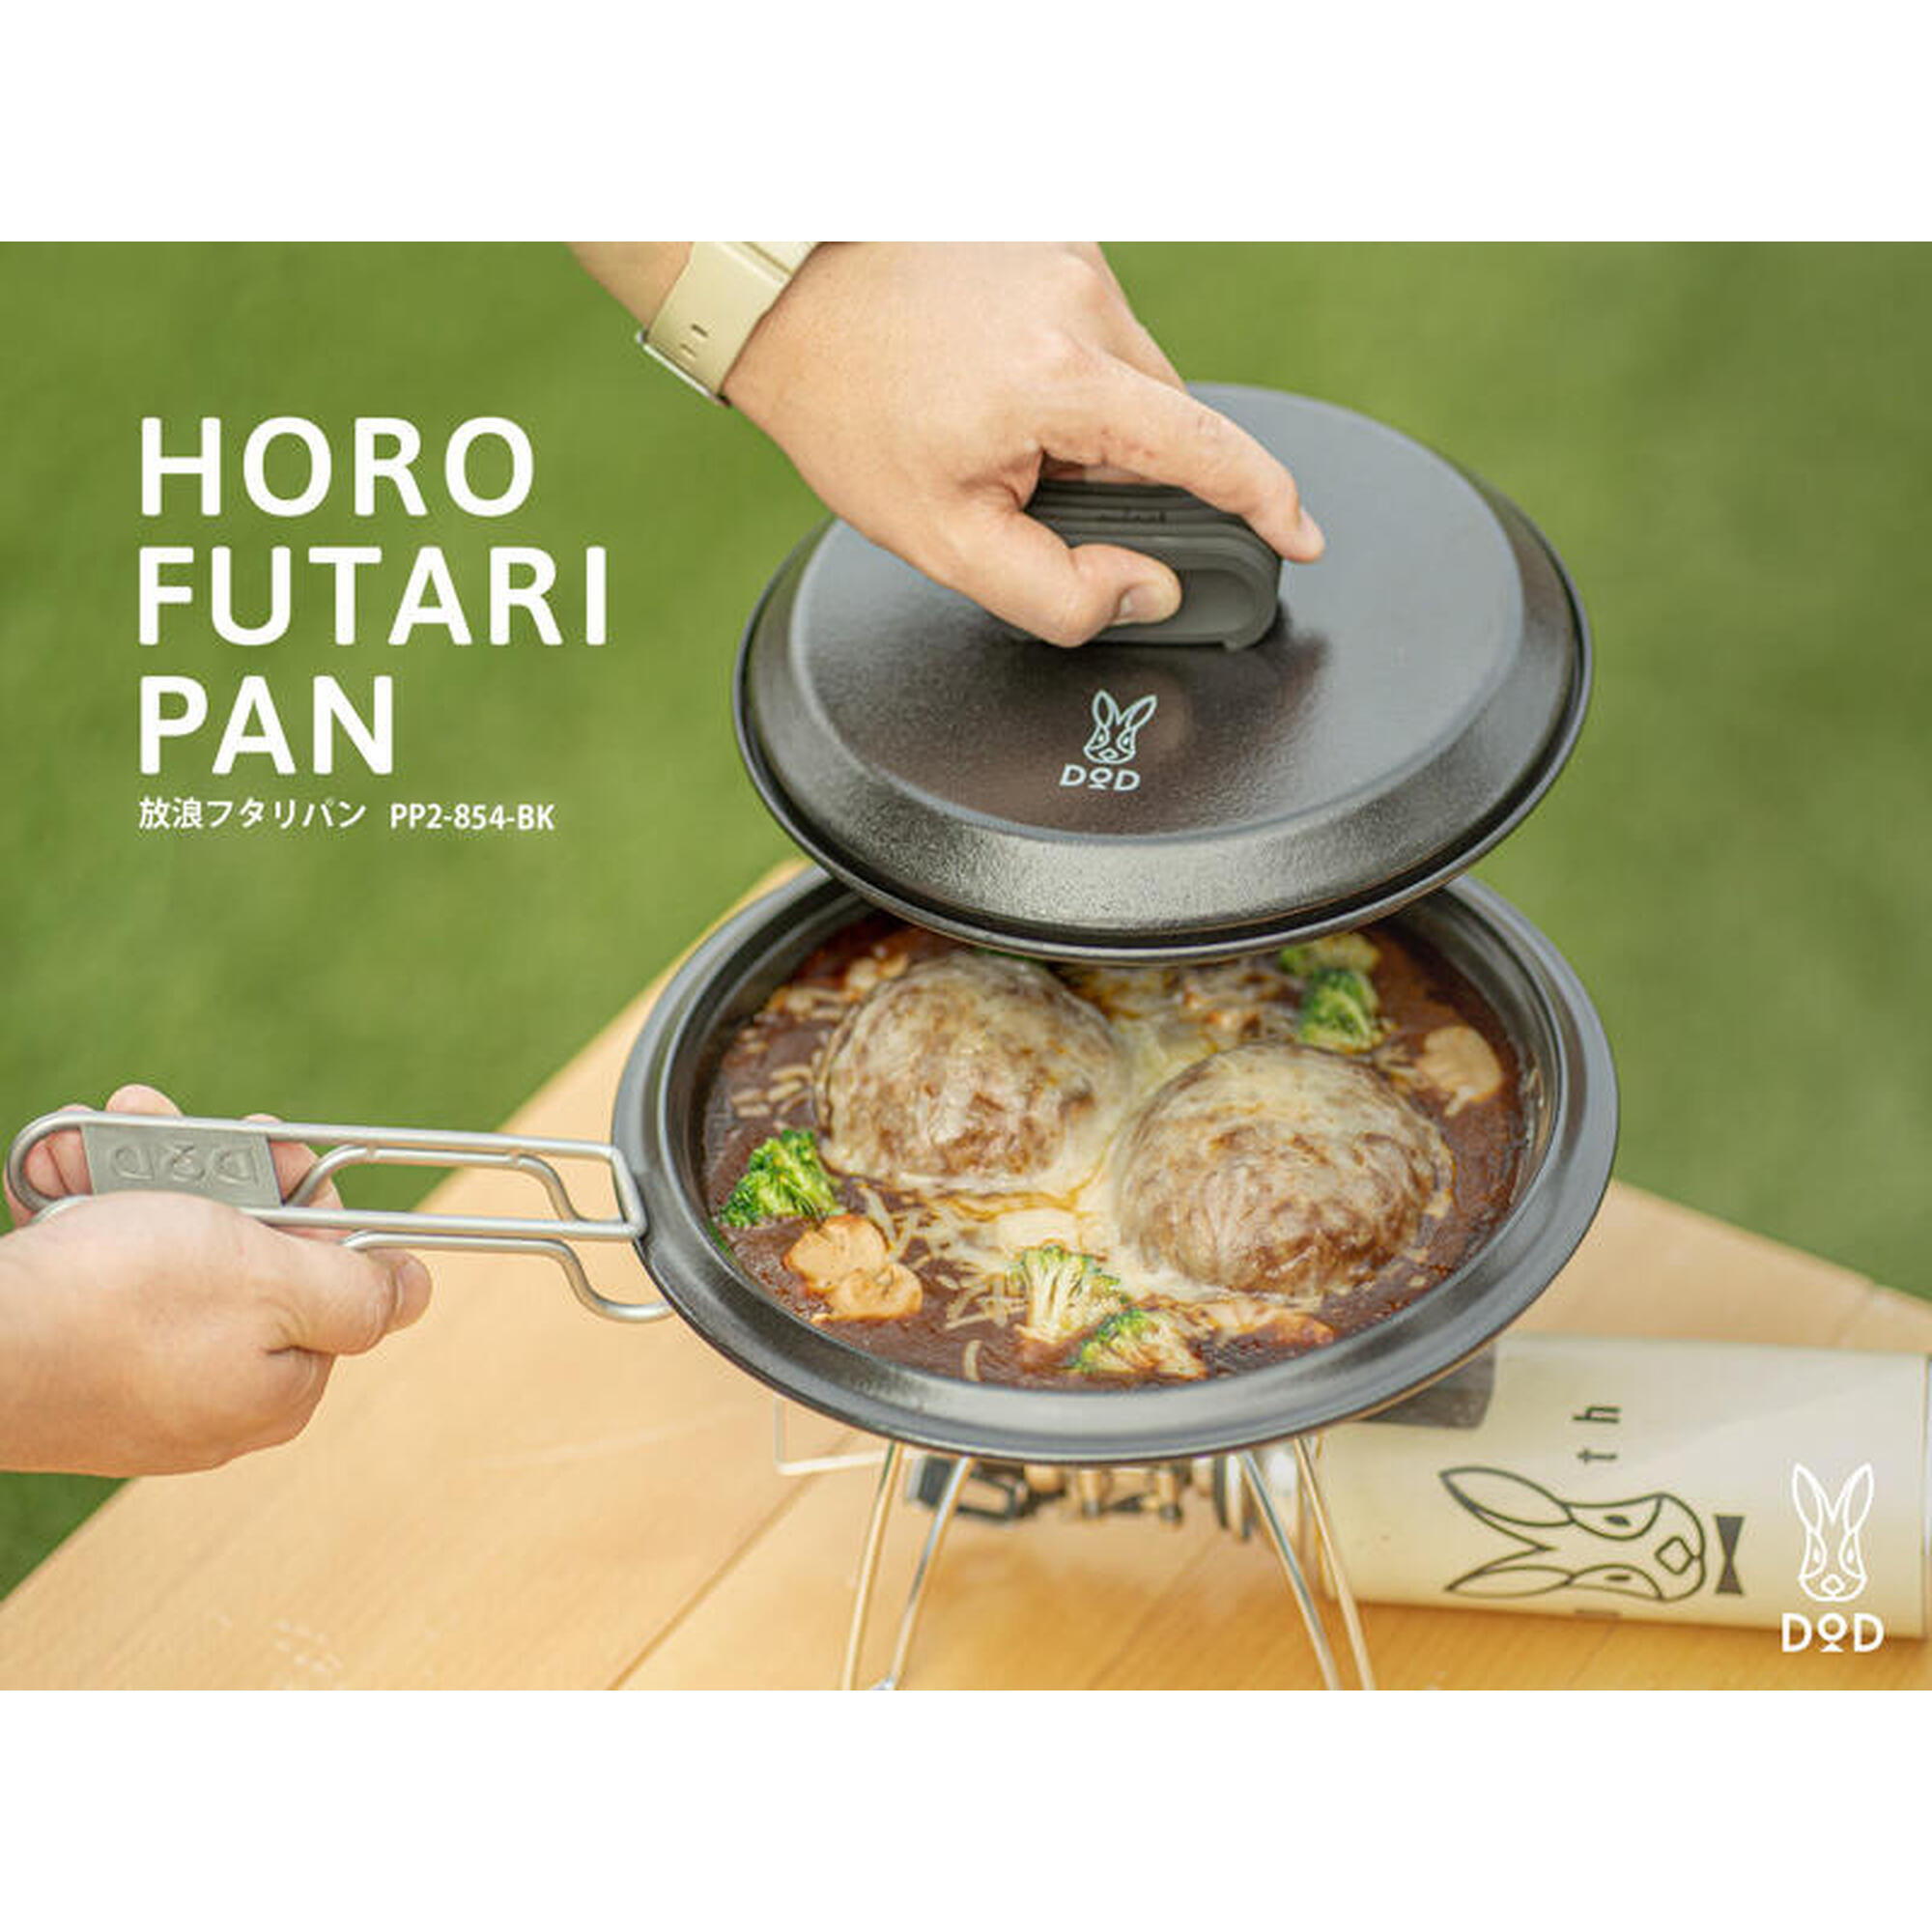 PP2-854-BK Horo Futari Pan (Frying Pan)